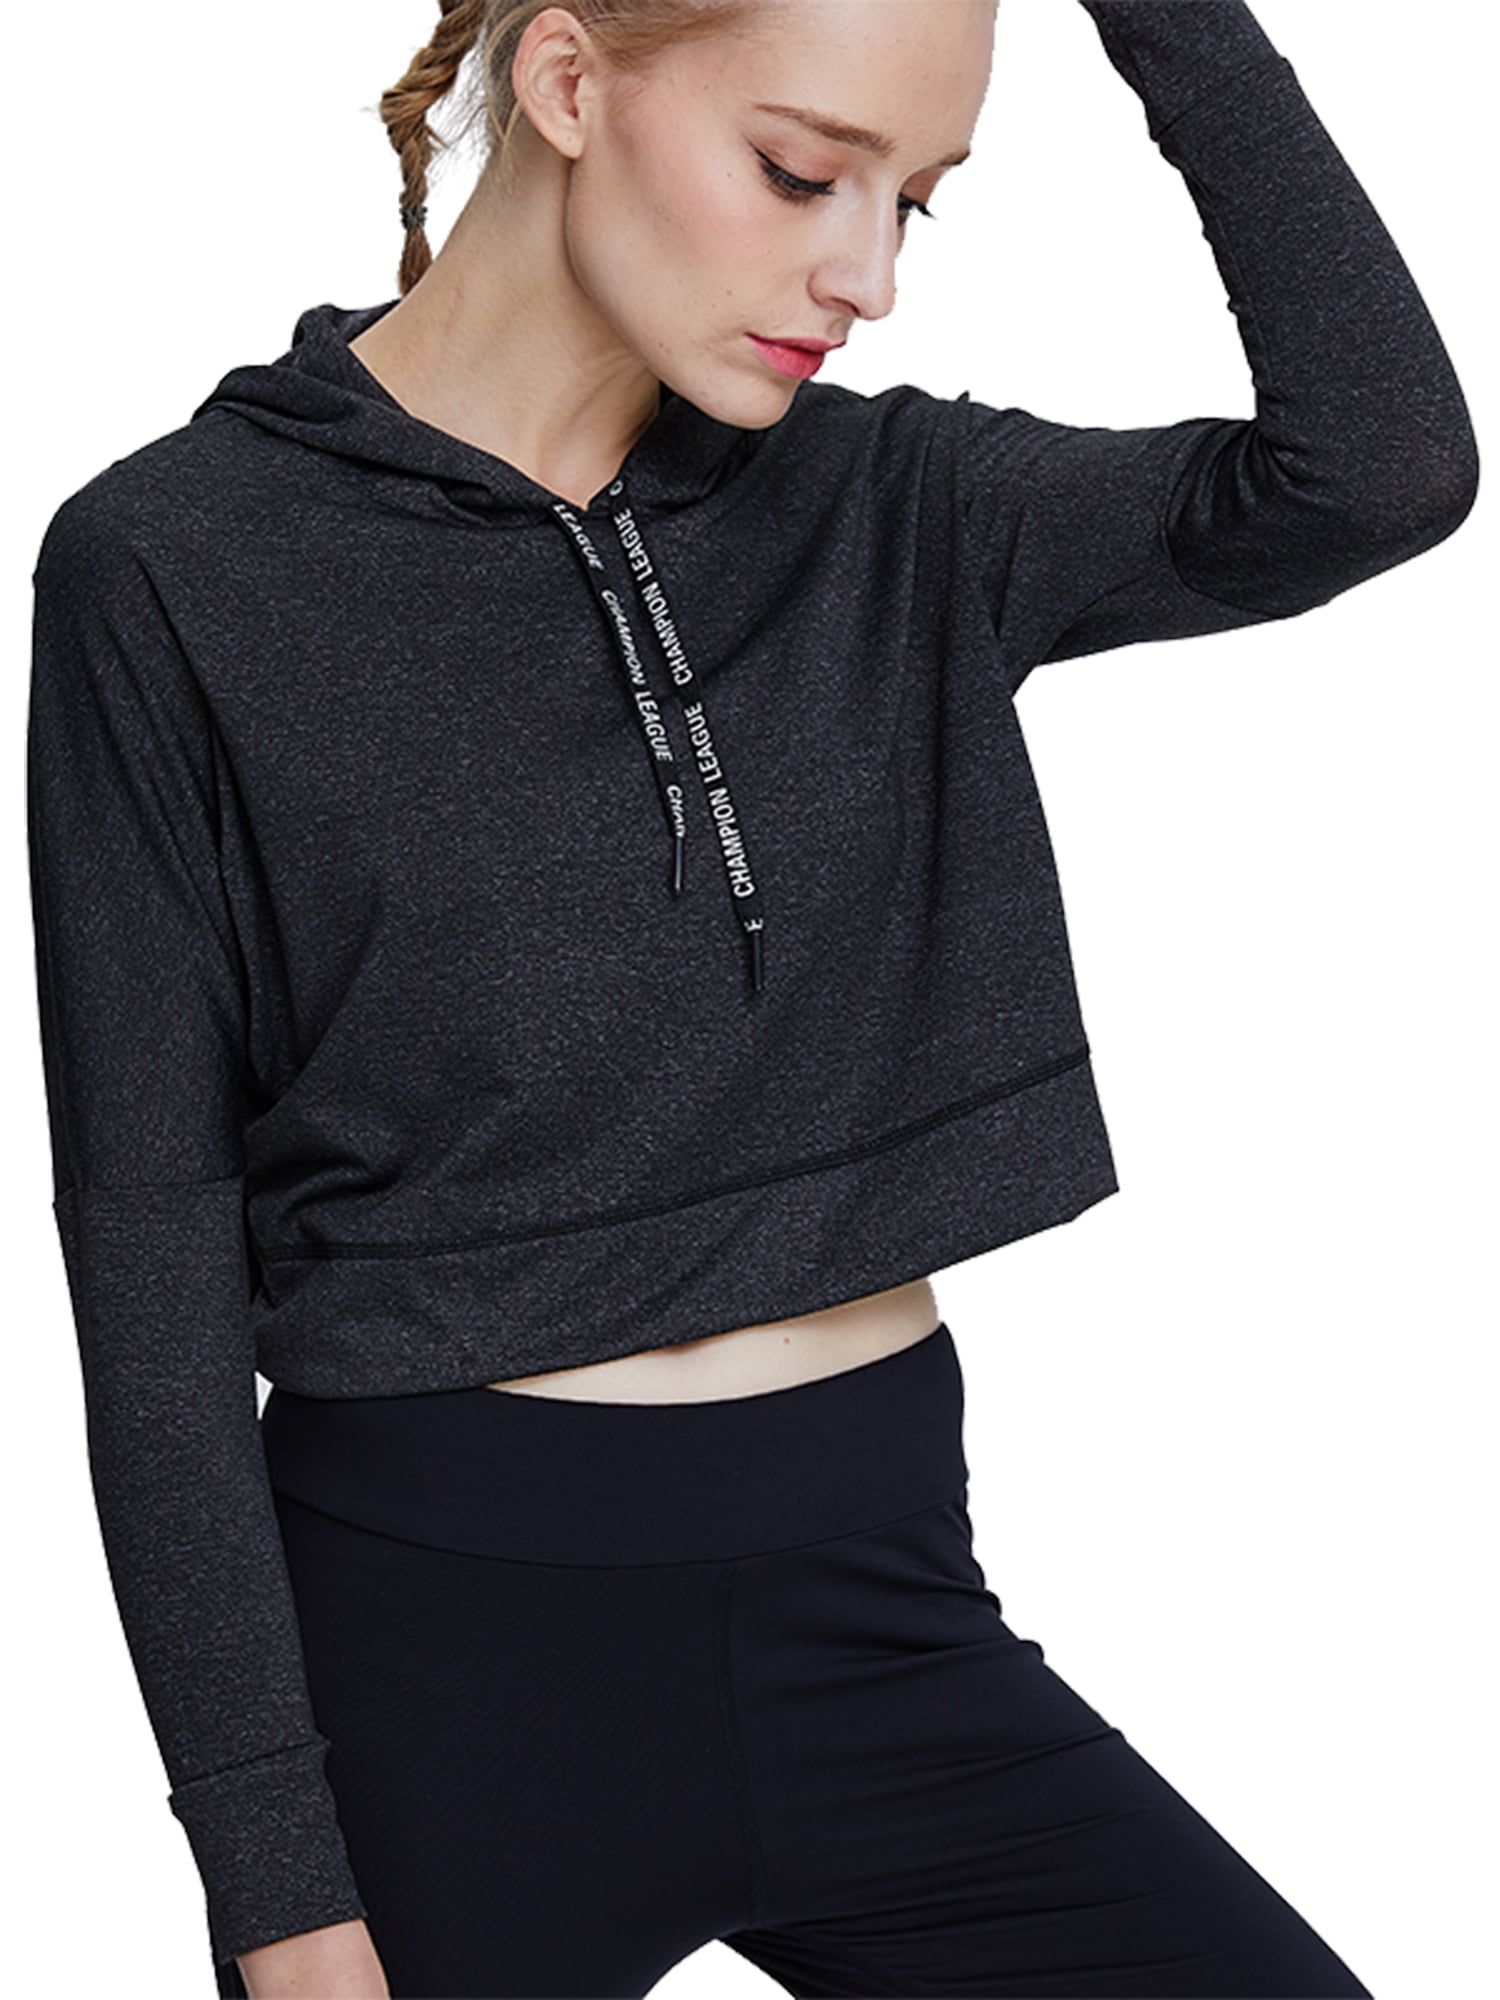 Women Top Long Sleeve Casual Hoodie Jumper Pullover Sweatshirt Loose Shirt 